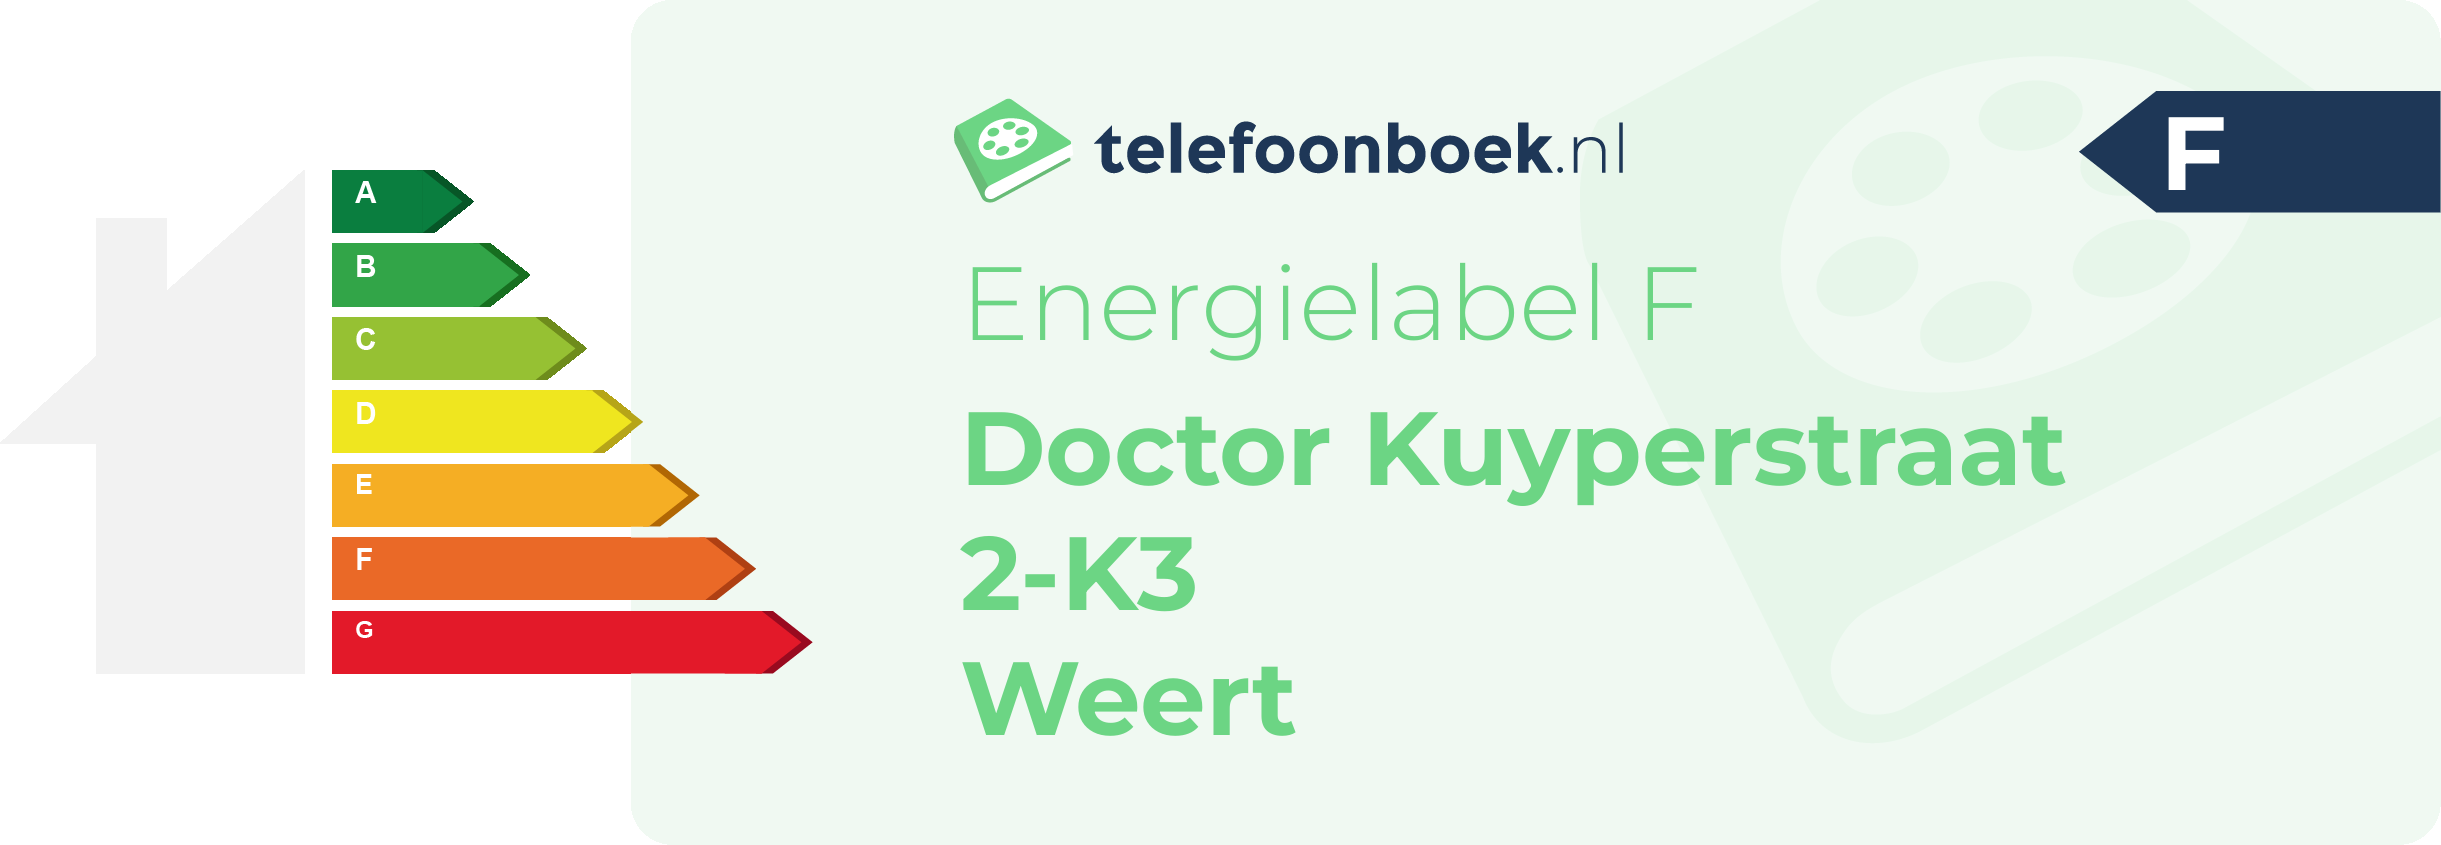 Energielabel Doctor Kuyperstraat 2-K3 Weert